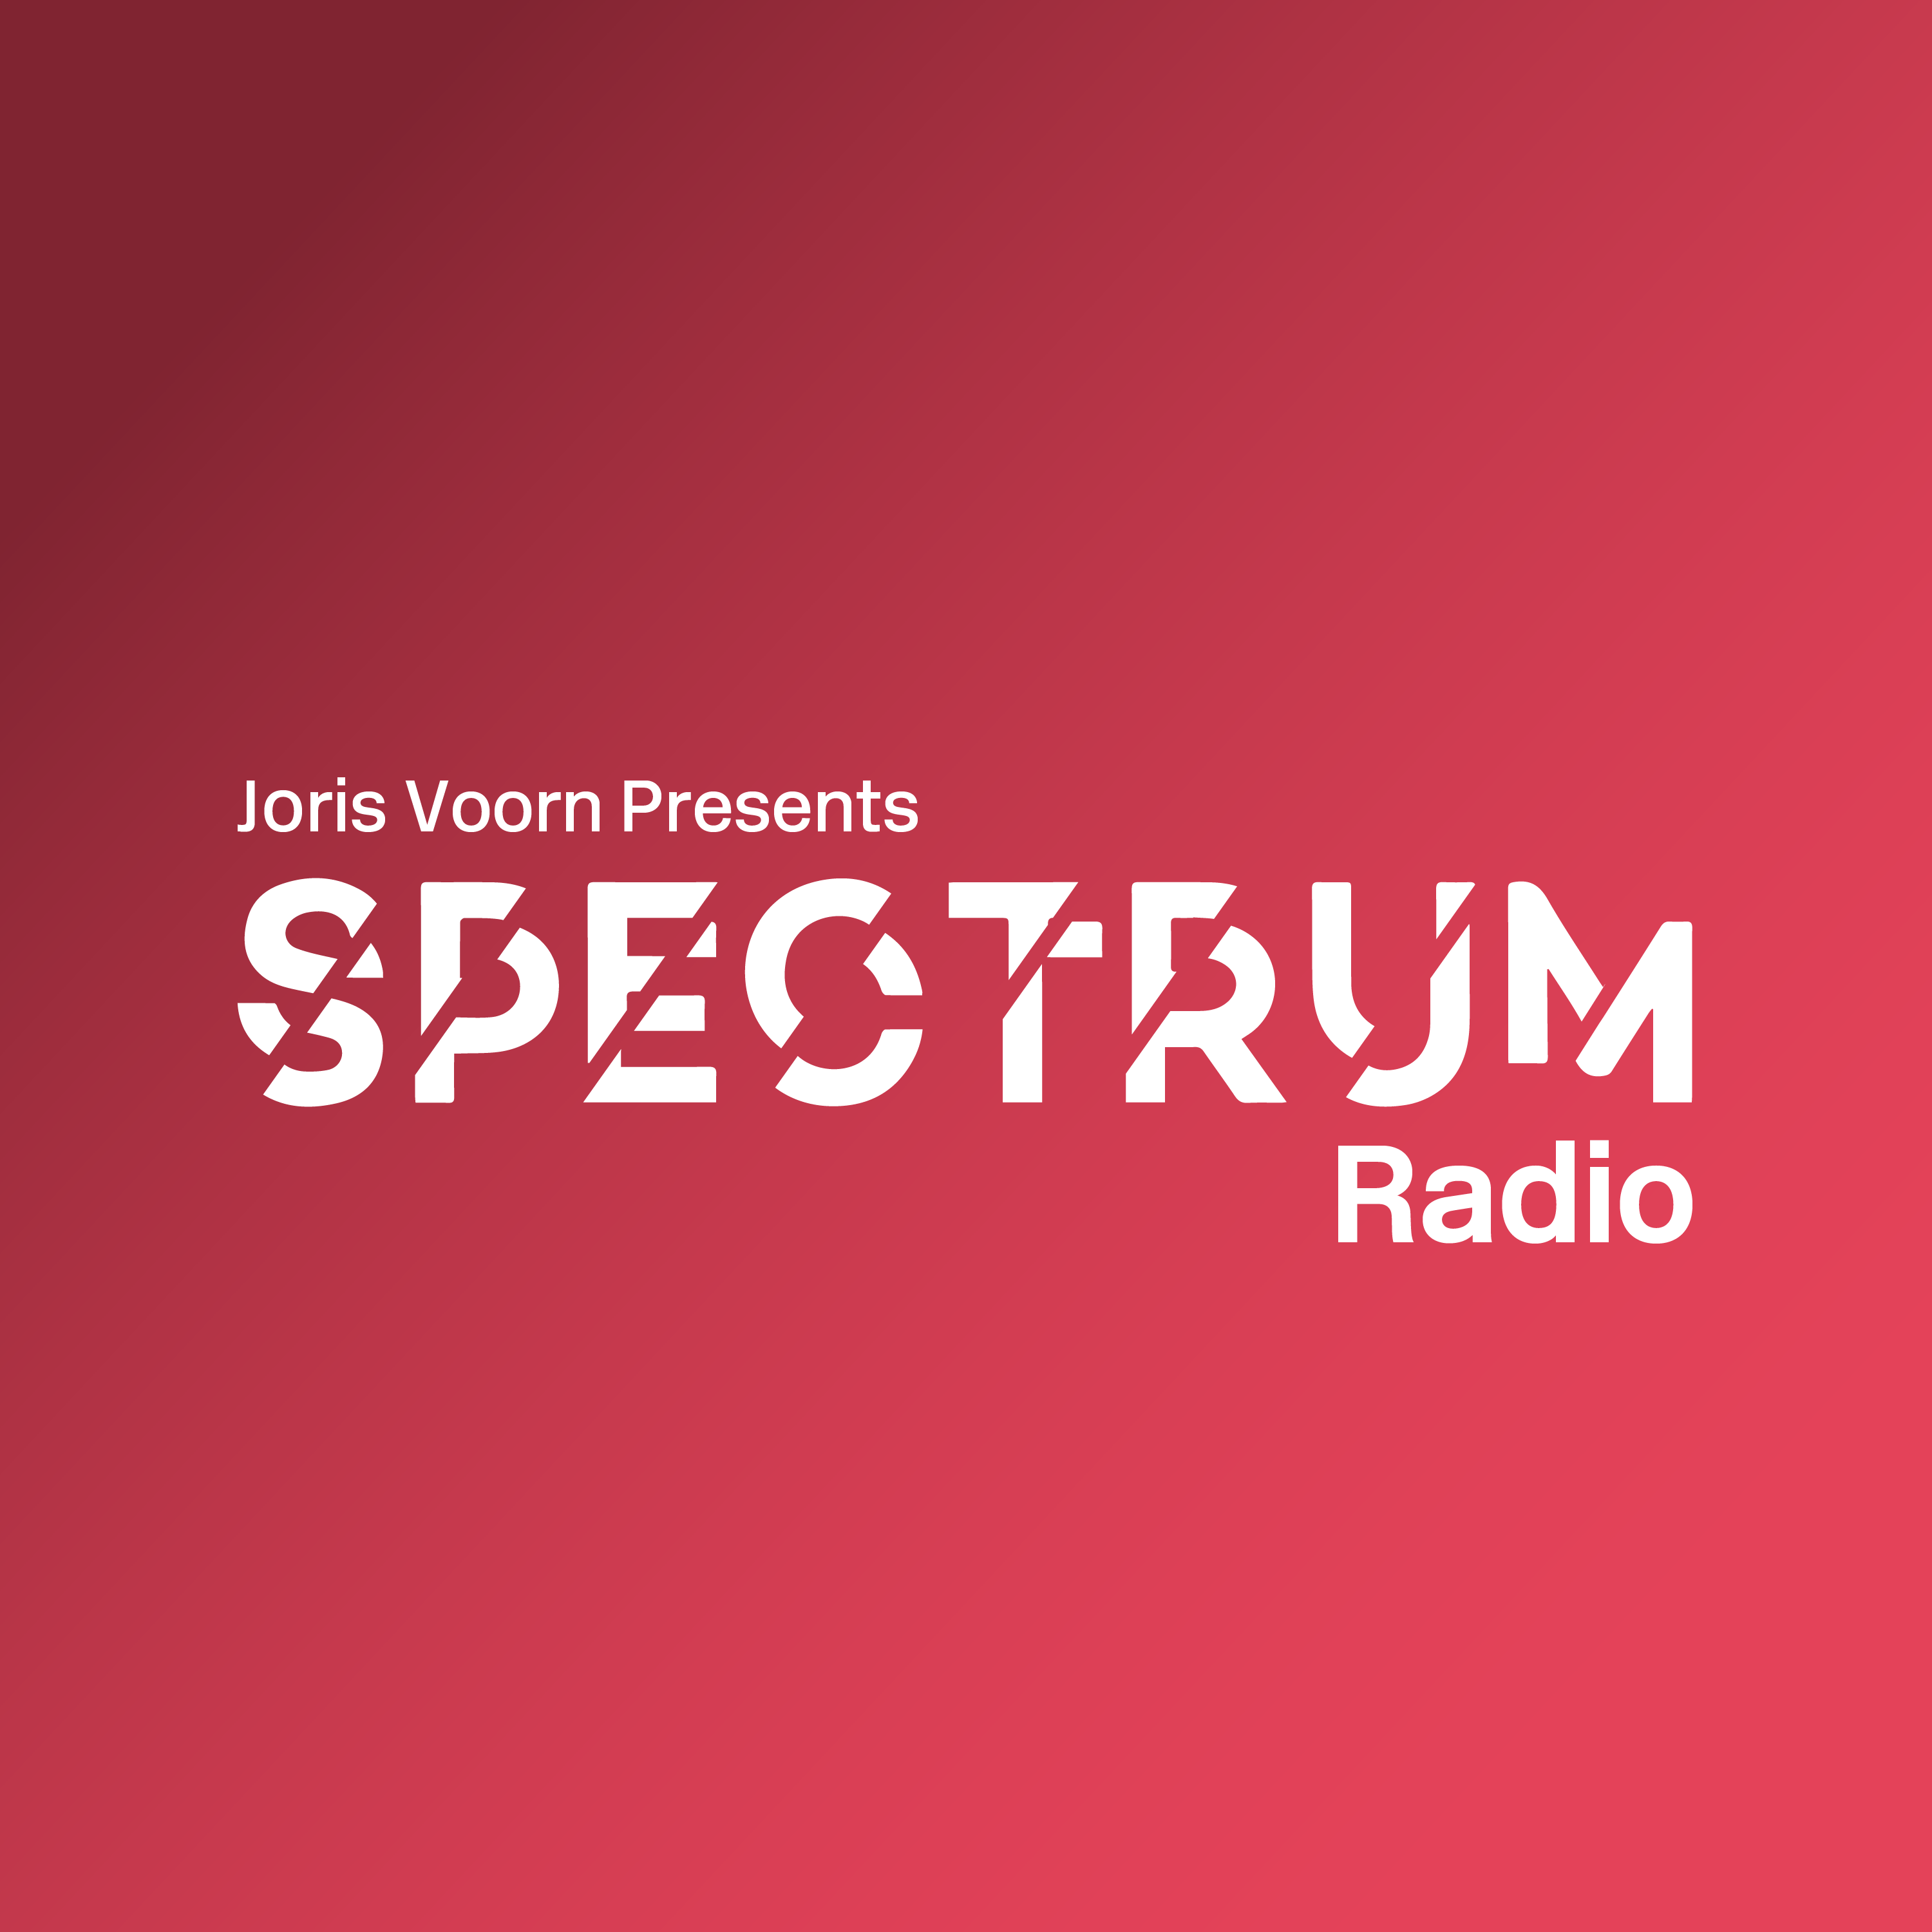 Delta Podcasts - Spectrum Radio by Joris Voorn (23.06.2018)